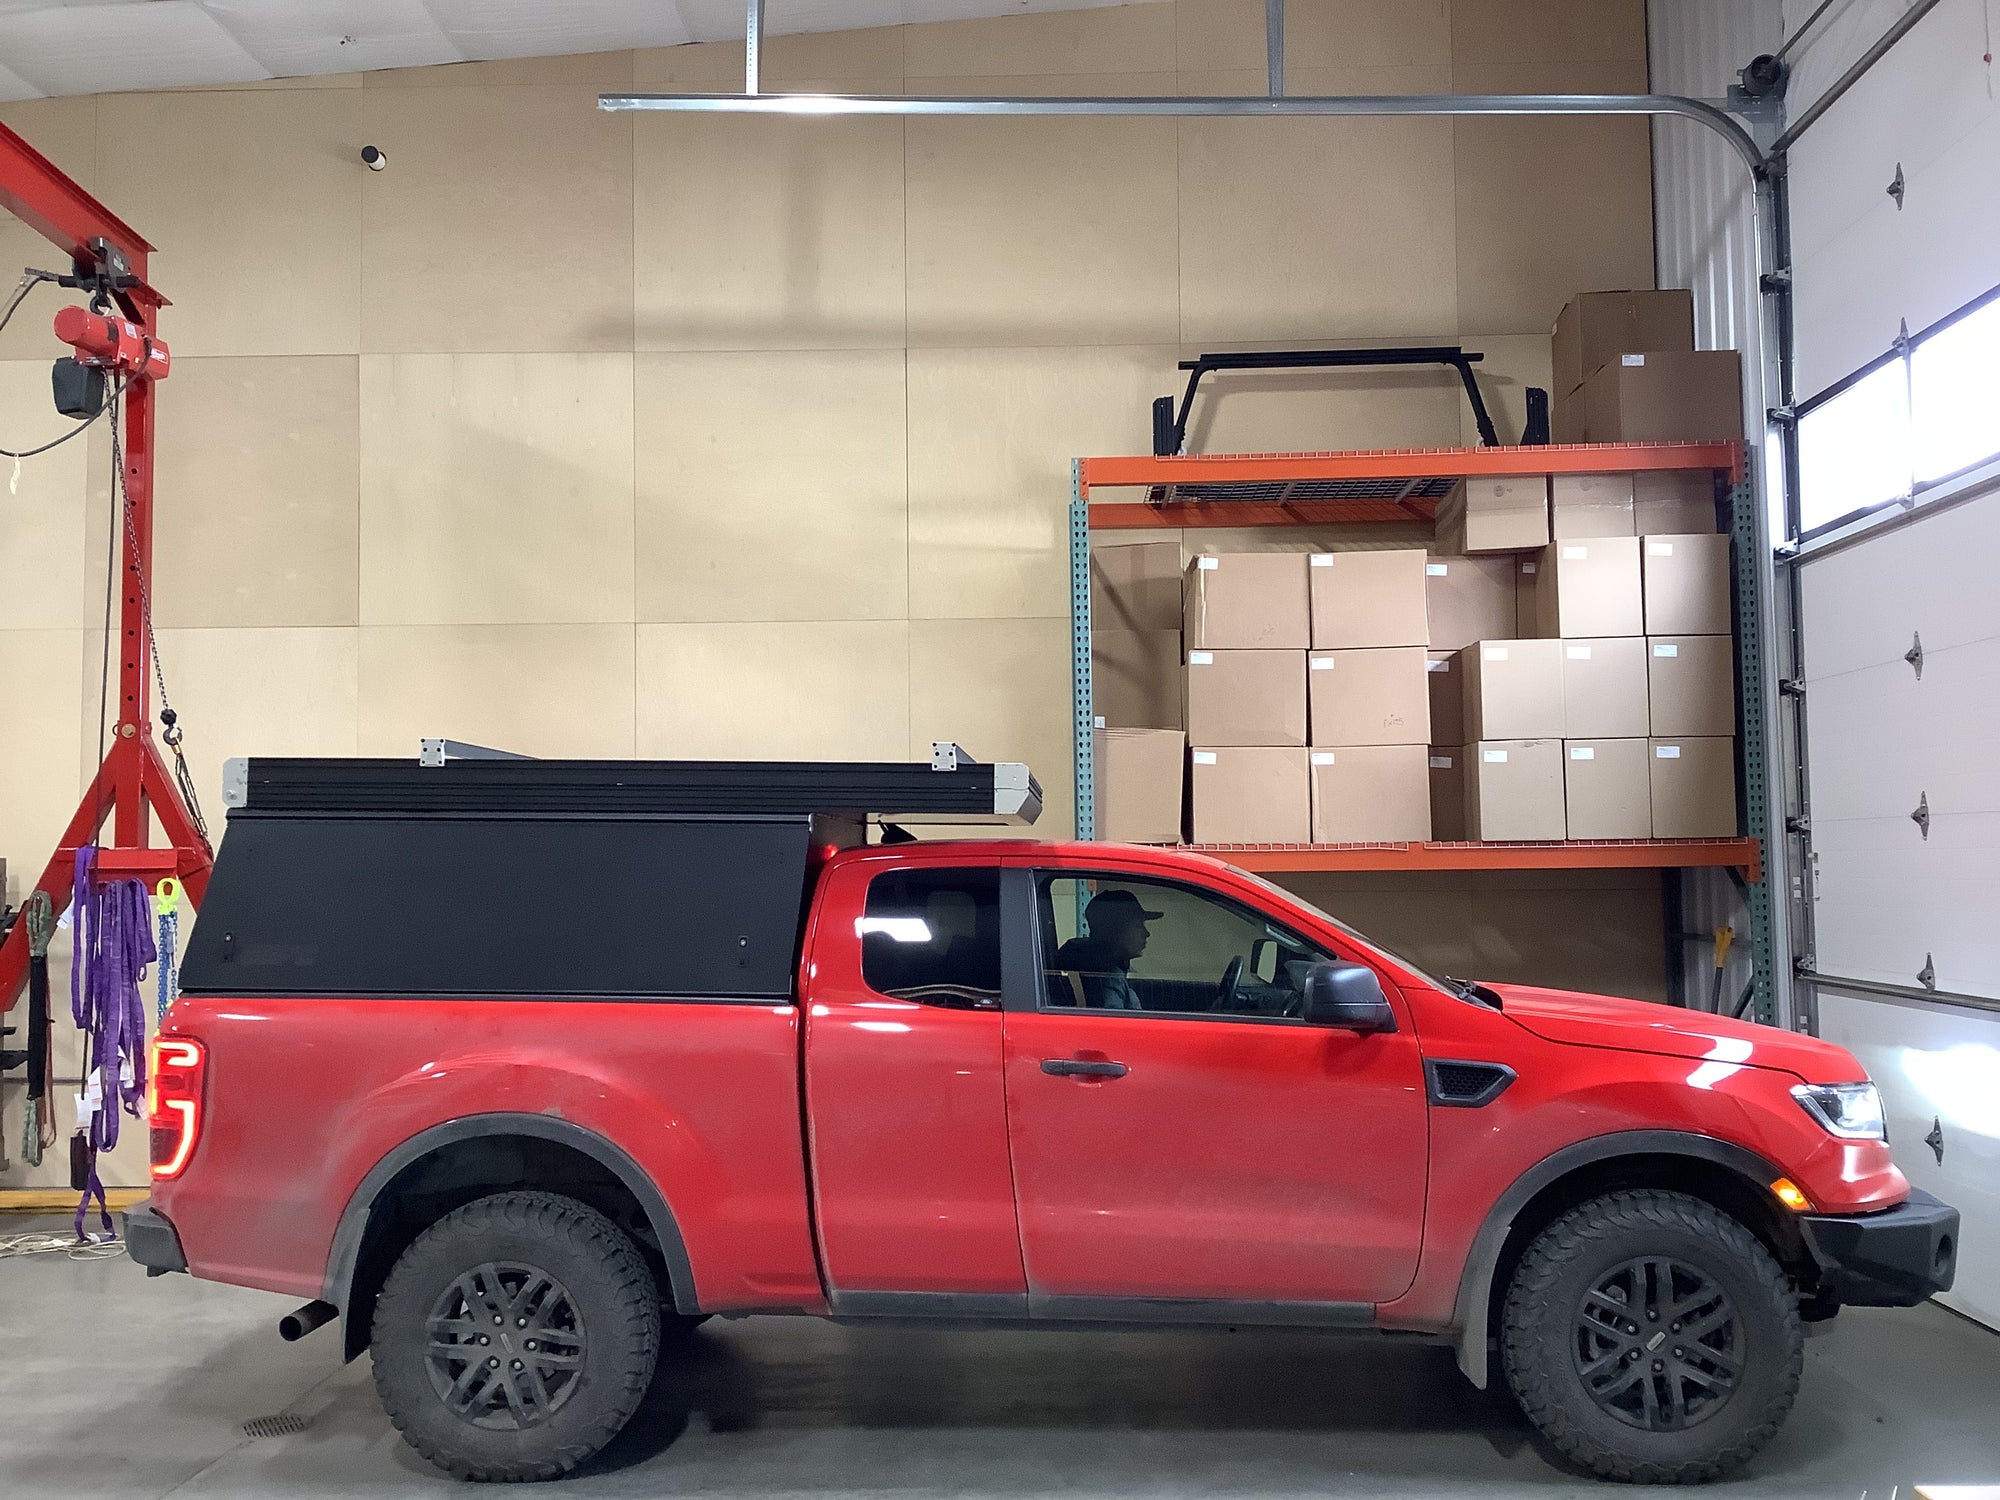 2020 Ford Ranger Camper - Build #1547